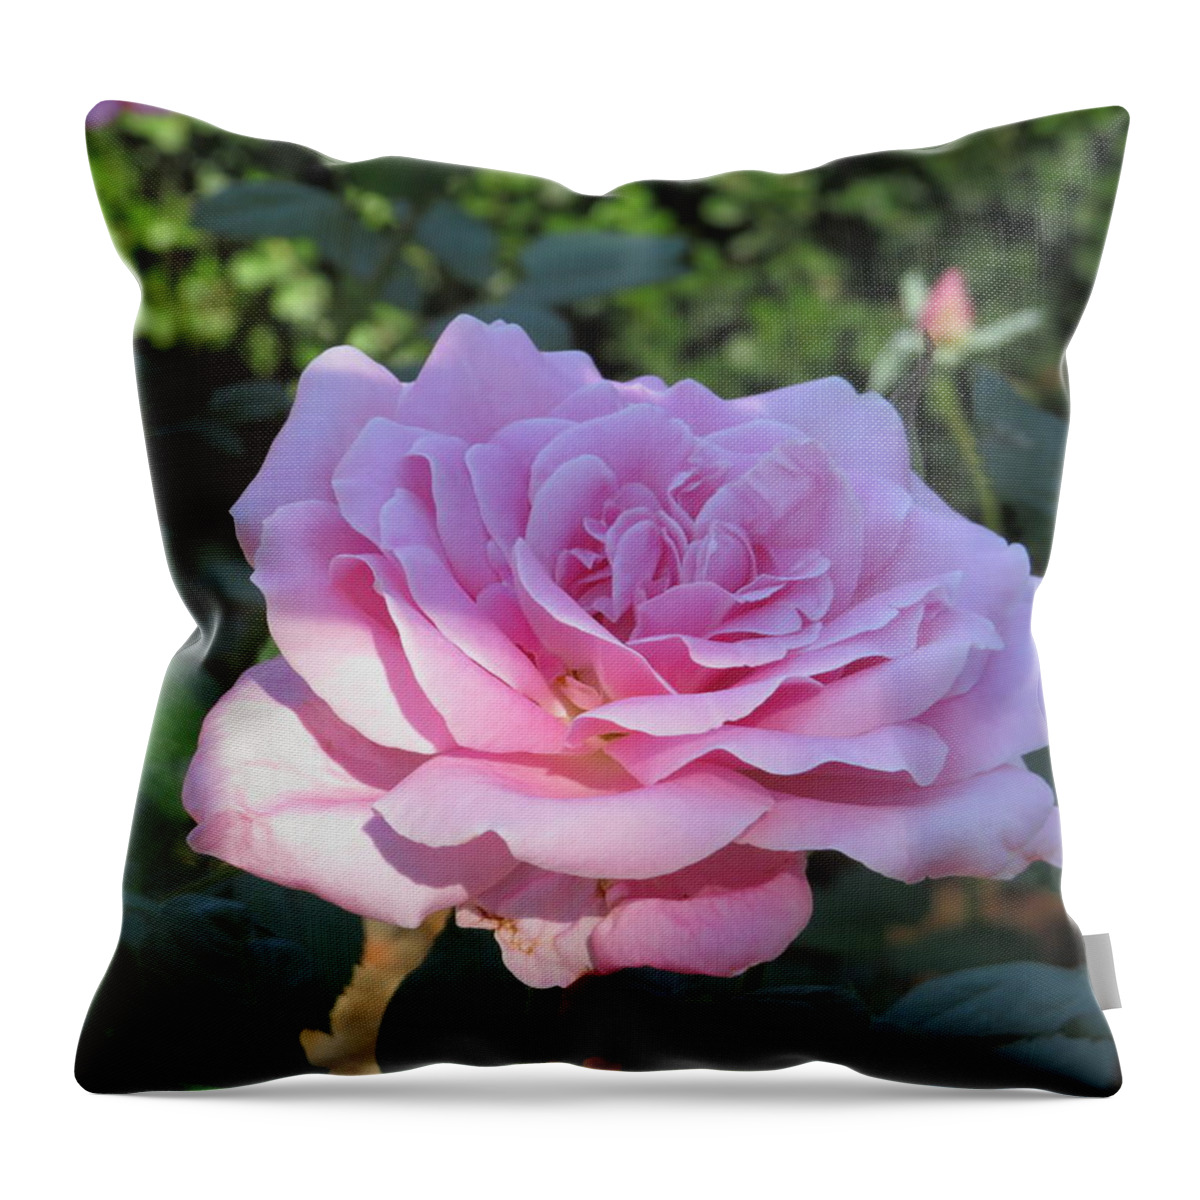  Throw Pillow featuring the photograph Rose Garden by Raymond Fernandez